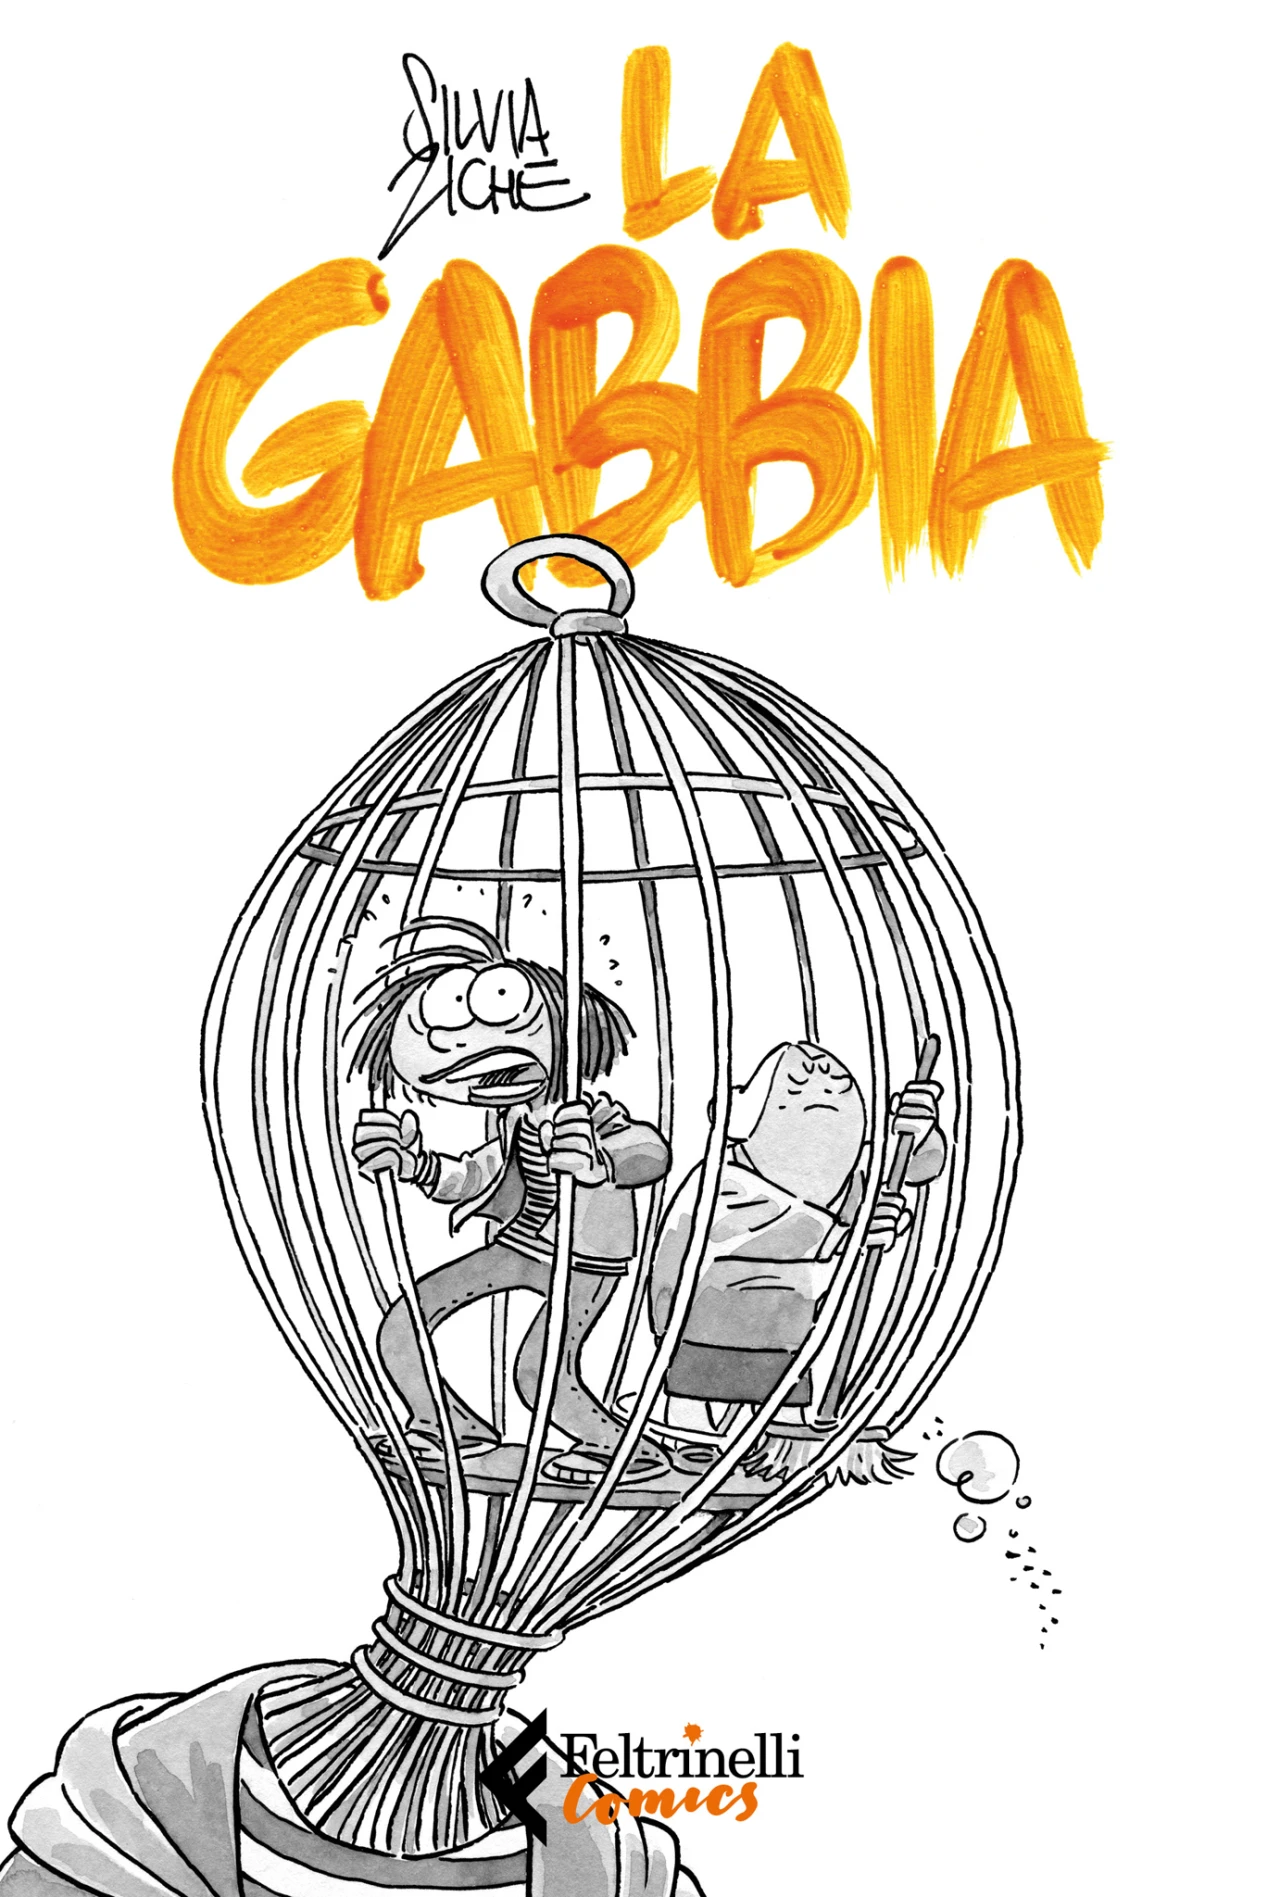 bcbf23-comics-silvia-ziche-la-gabbia.jpg